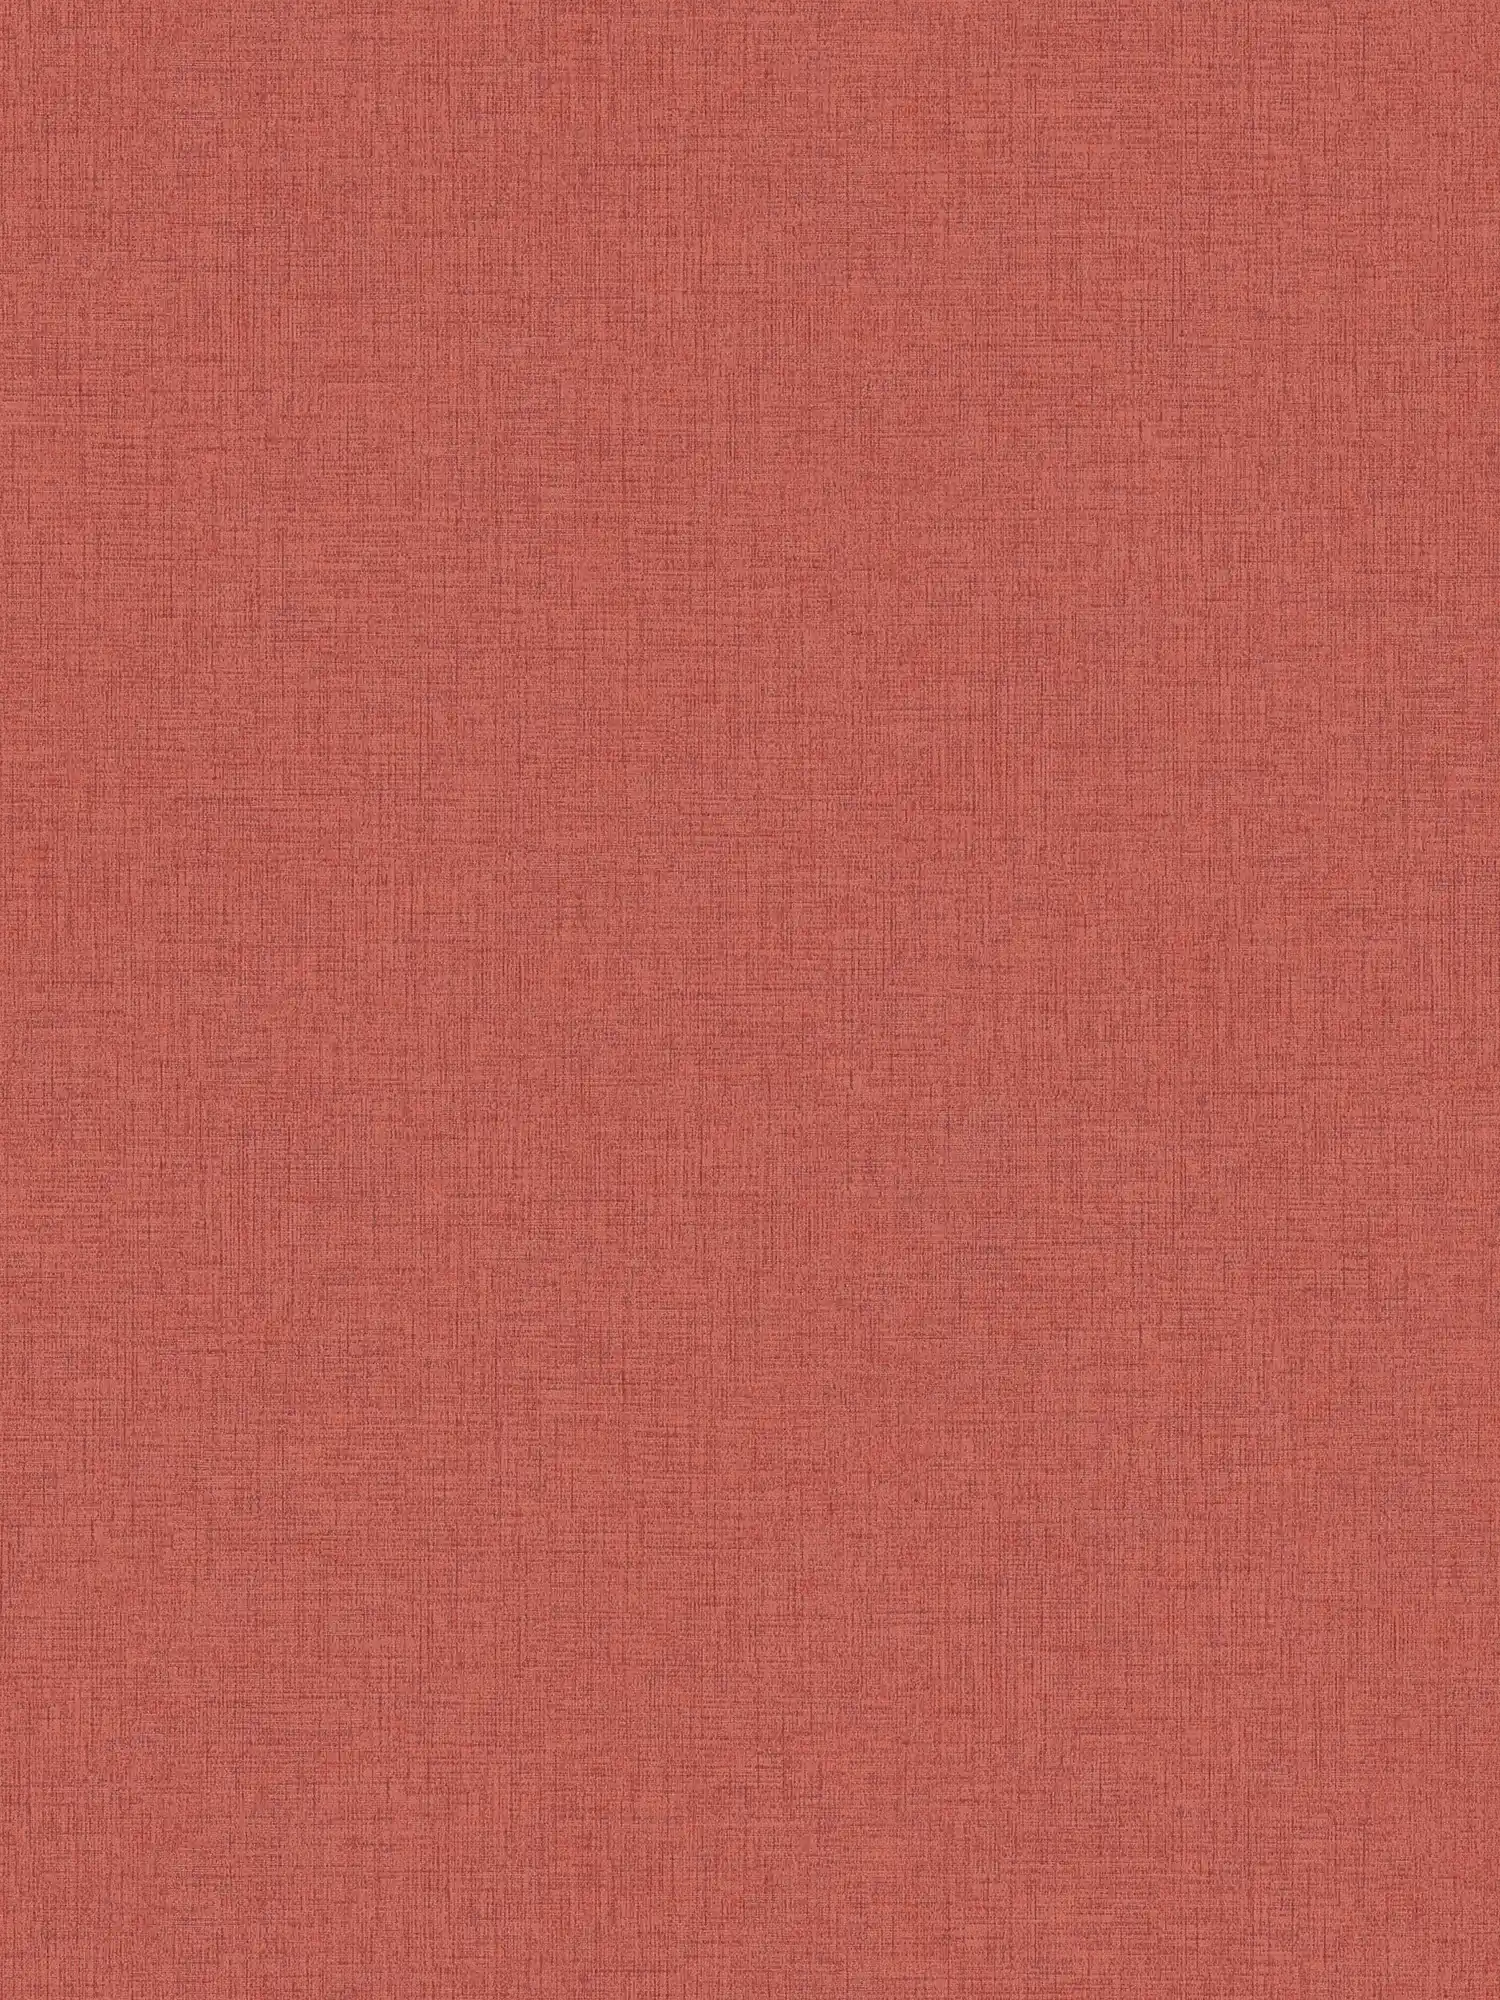 Carta da parati in tessuto non tessuto a tinta unita con aspetto tessile - rosso
